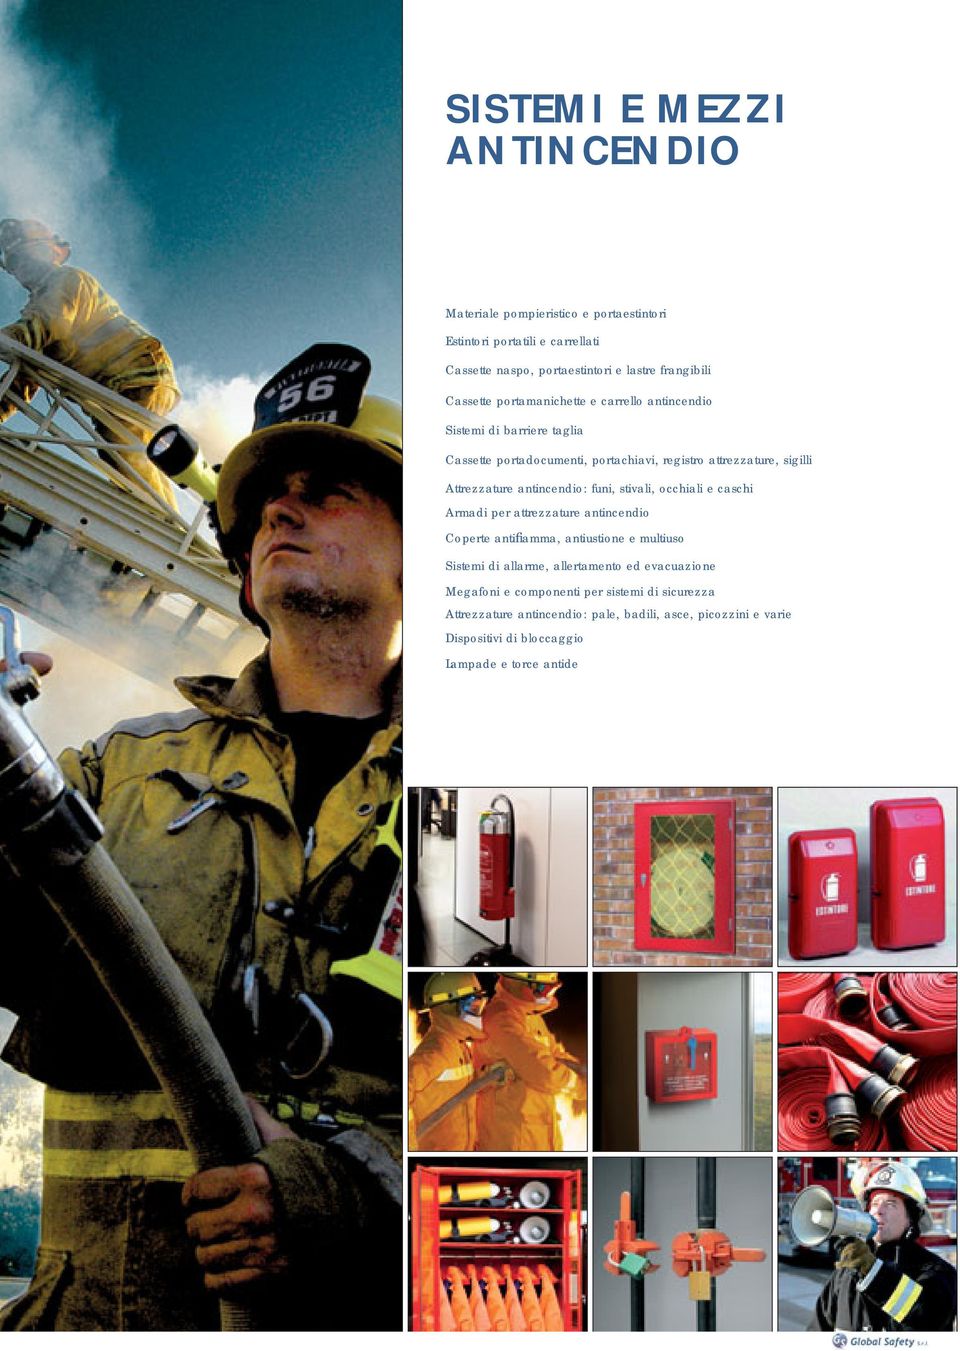 antincendio: funi, stivali, occhiali e caschi Armadi per attrezzature antincendio Coperte antifiamma, antiustione e multiuso Sistemi di allarme, allertamento ed